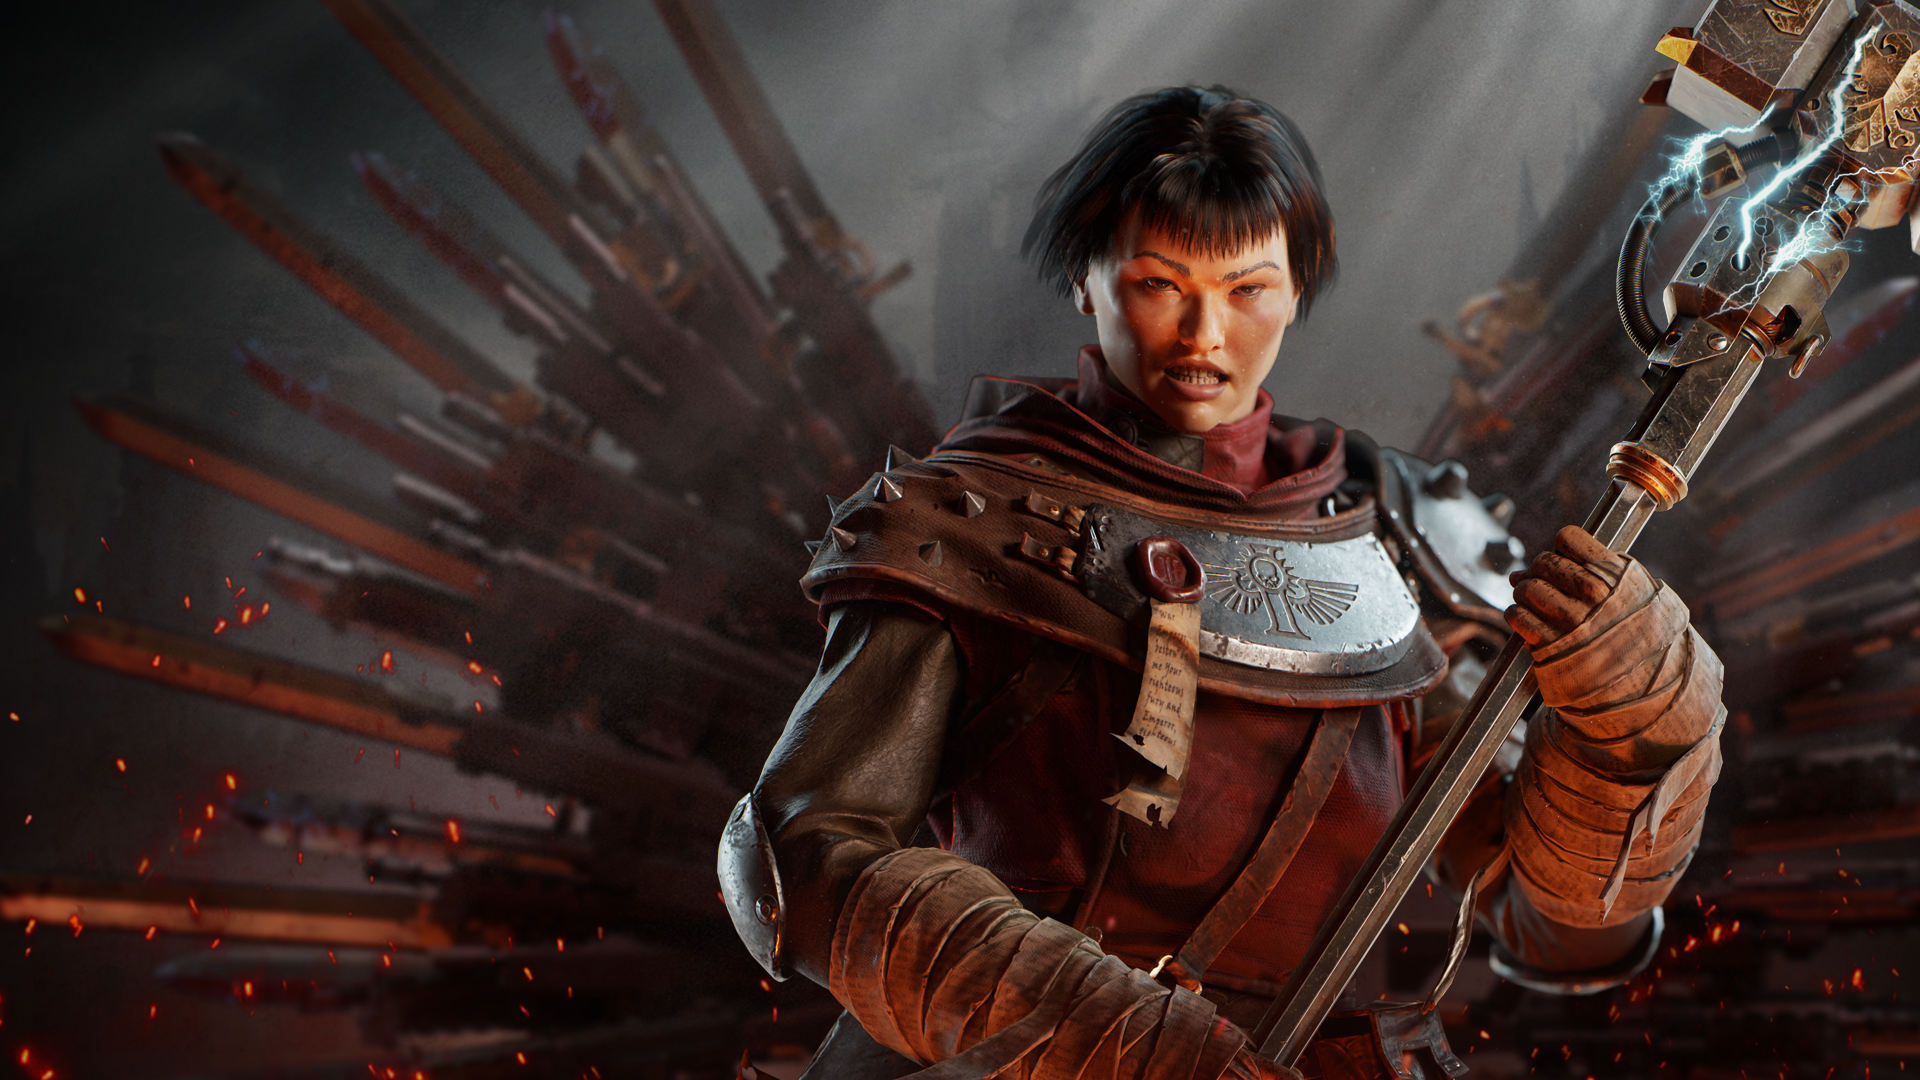 Prédicateur zélote de Warhammer 40,000 Darktide.  Une femme aux cheveux noirs coupés court portant des robes et une armure rouges, elle tient un gros marteau qui crépite d'électricité.